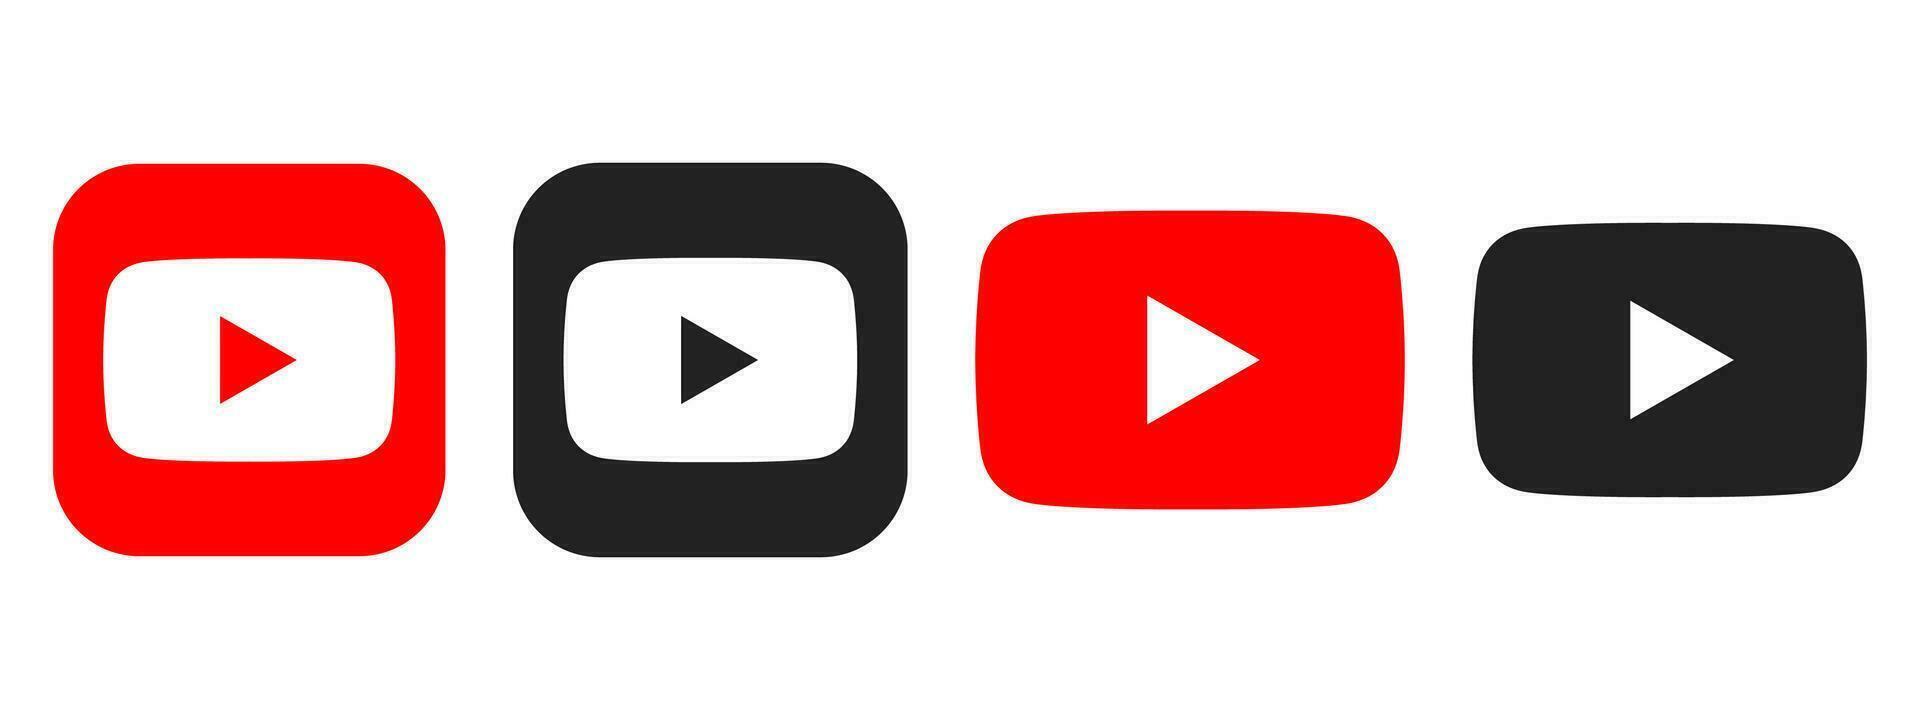 Set youtube icon. YouTube logo icon isolated on white background. vector